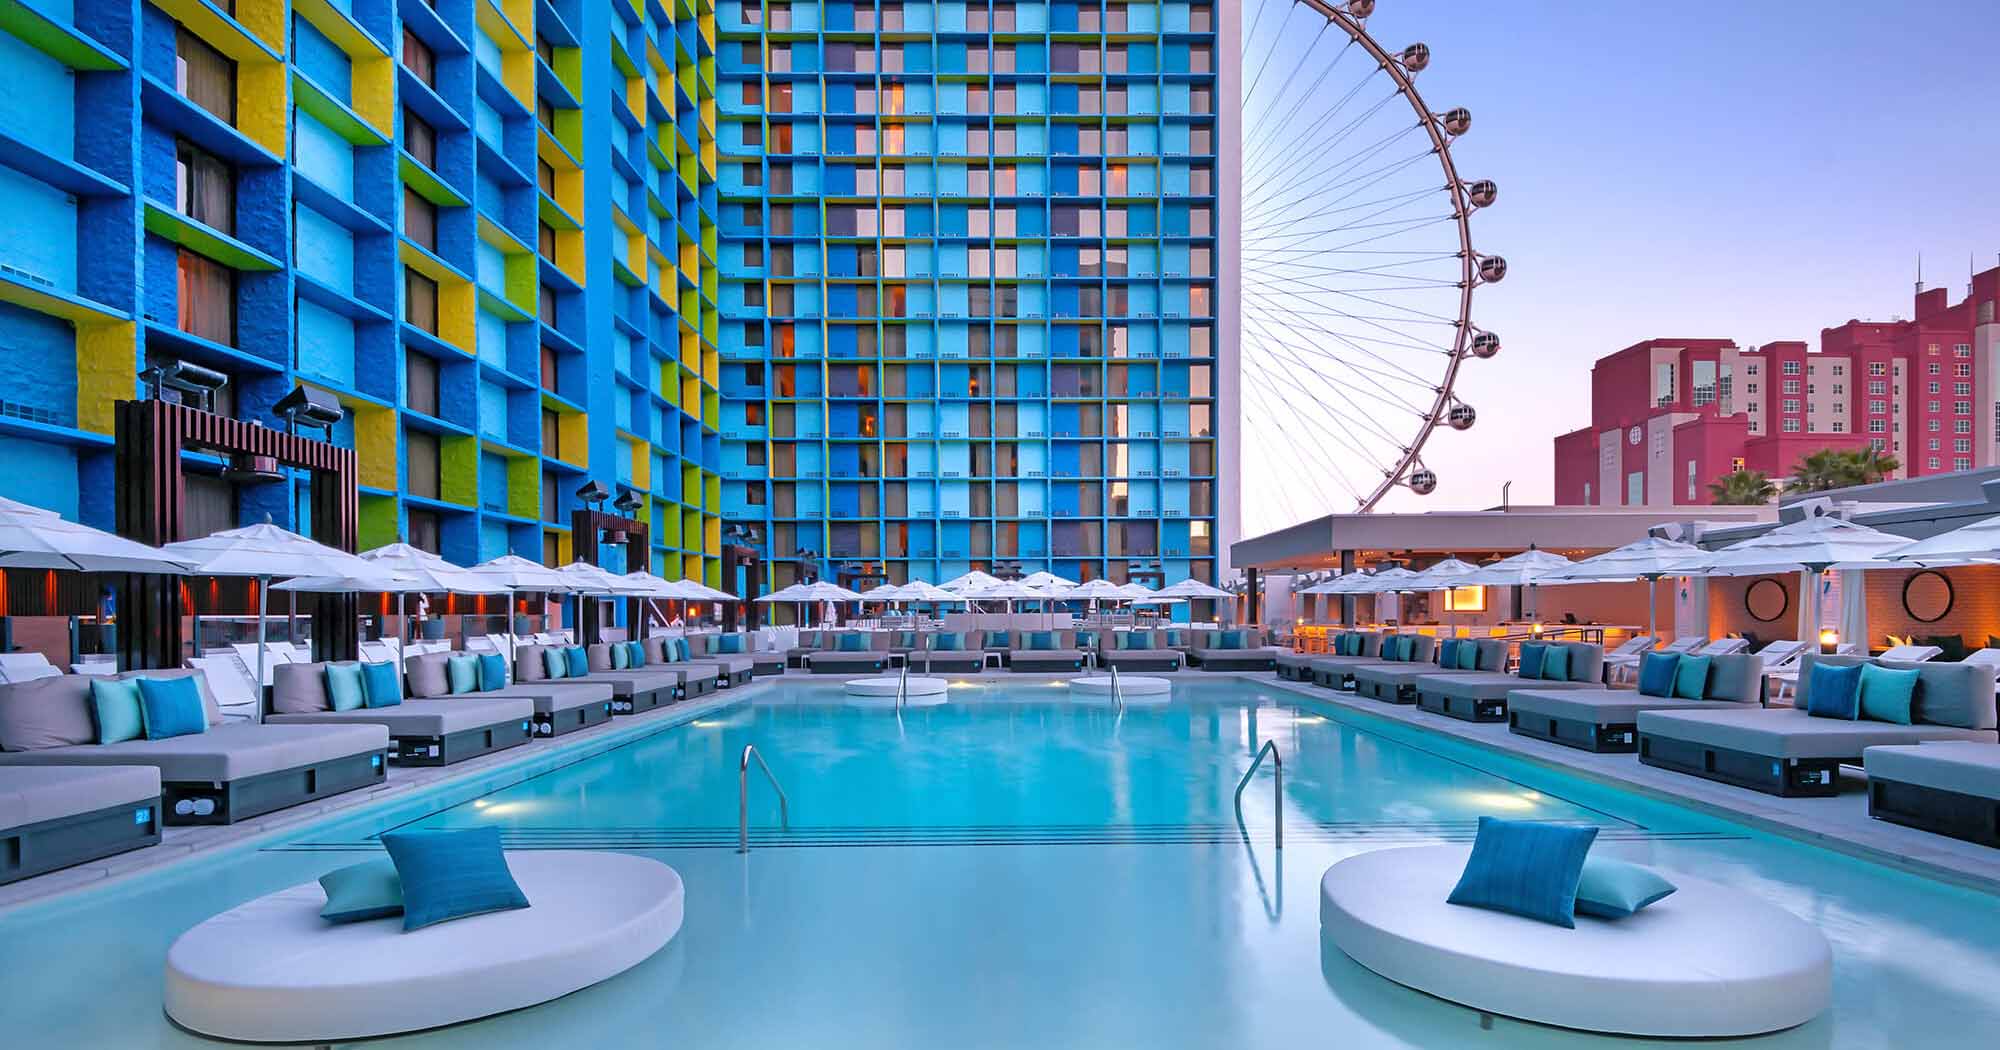 LINQ_pool Las Vegas Hotels